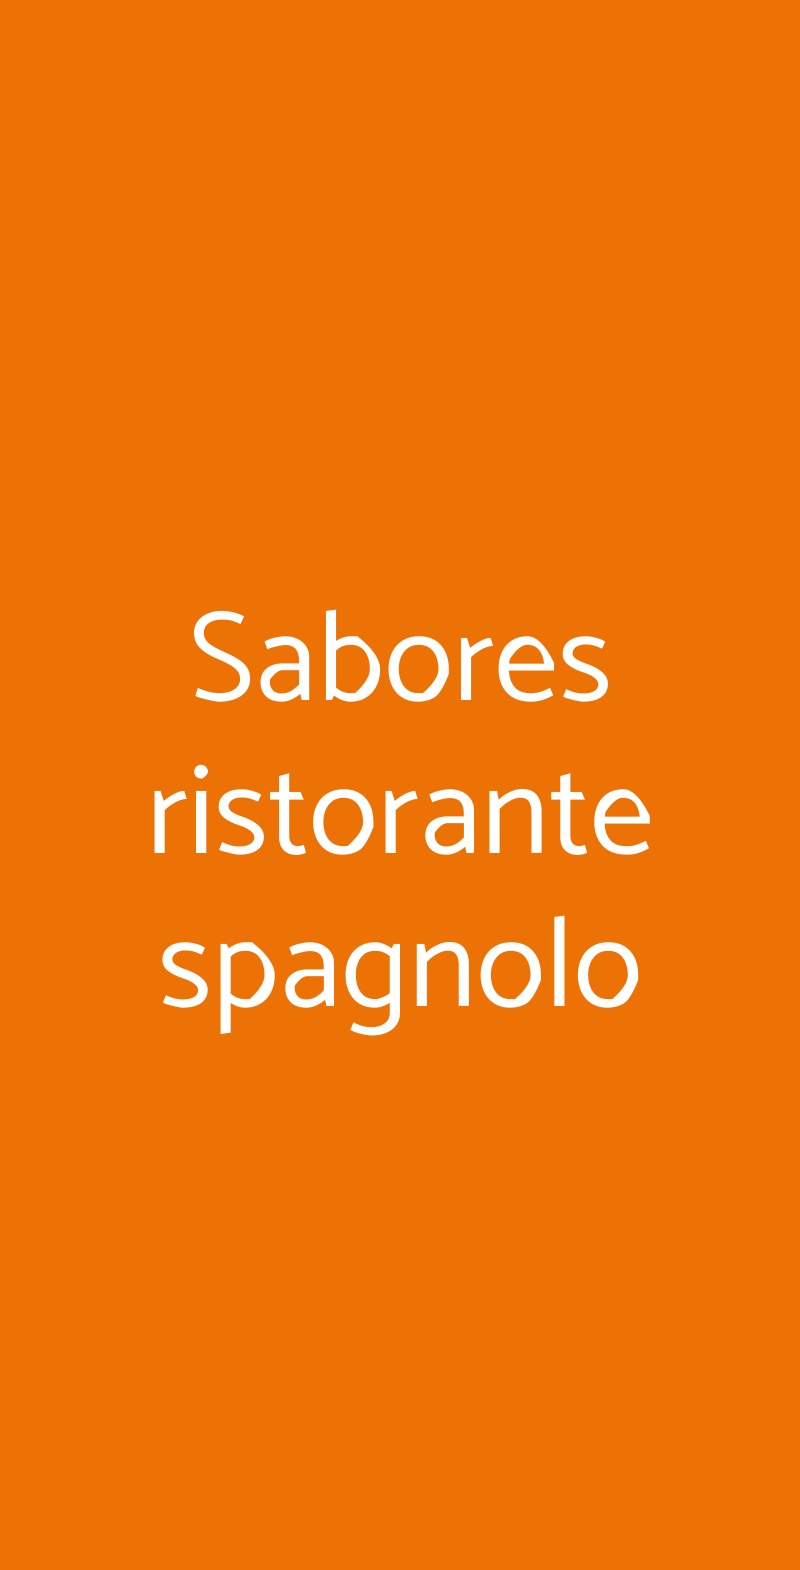 Sabores ristorante spagnolo Ravenna menù 1 pagina